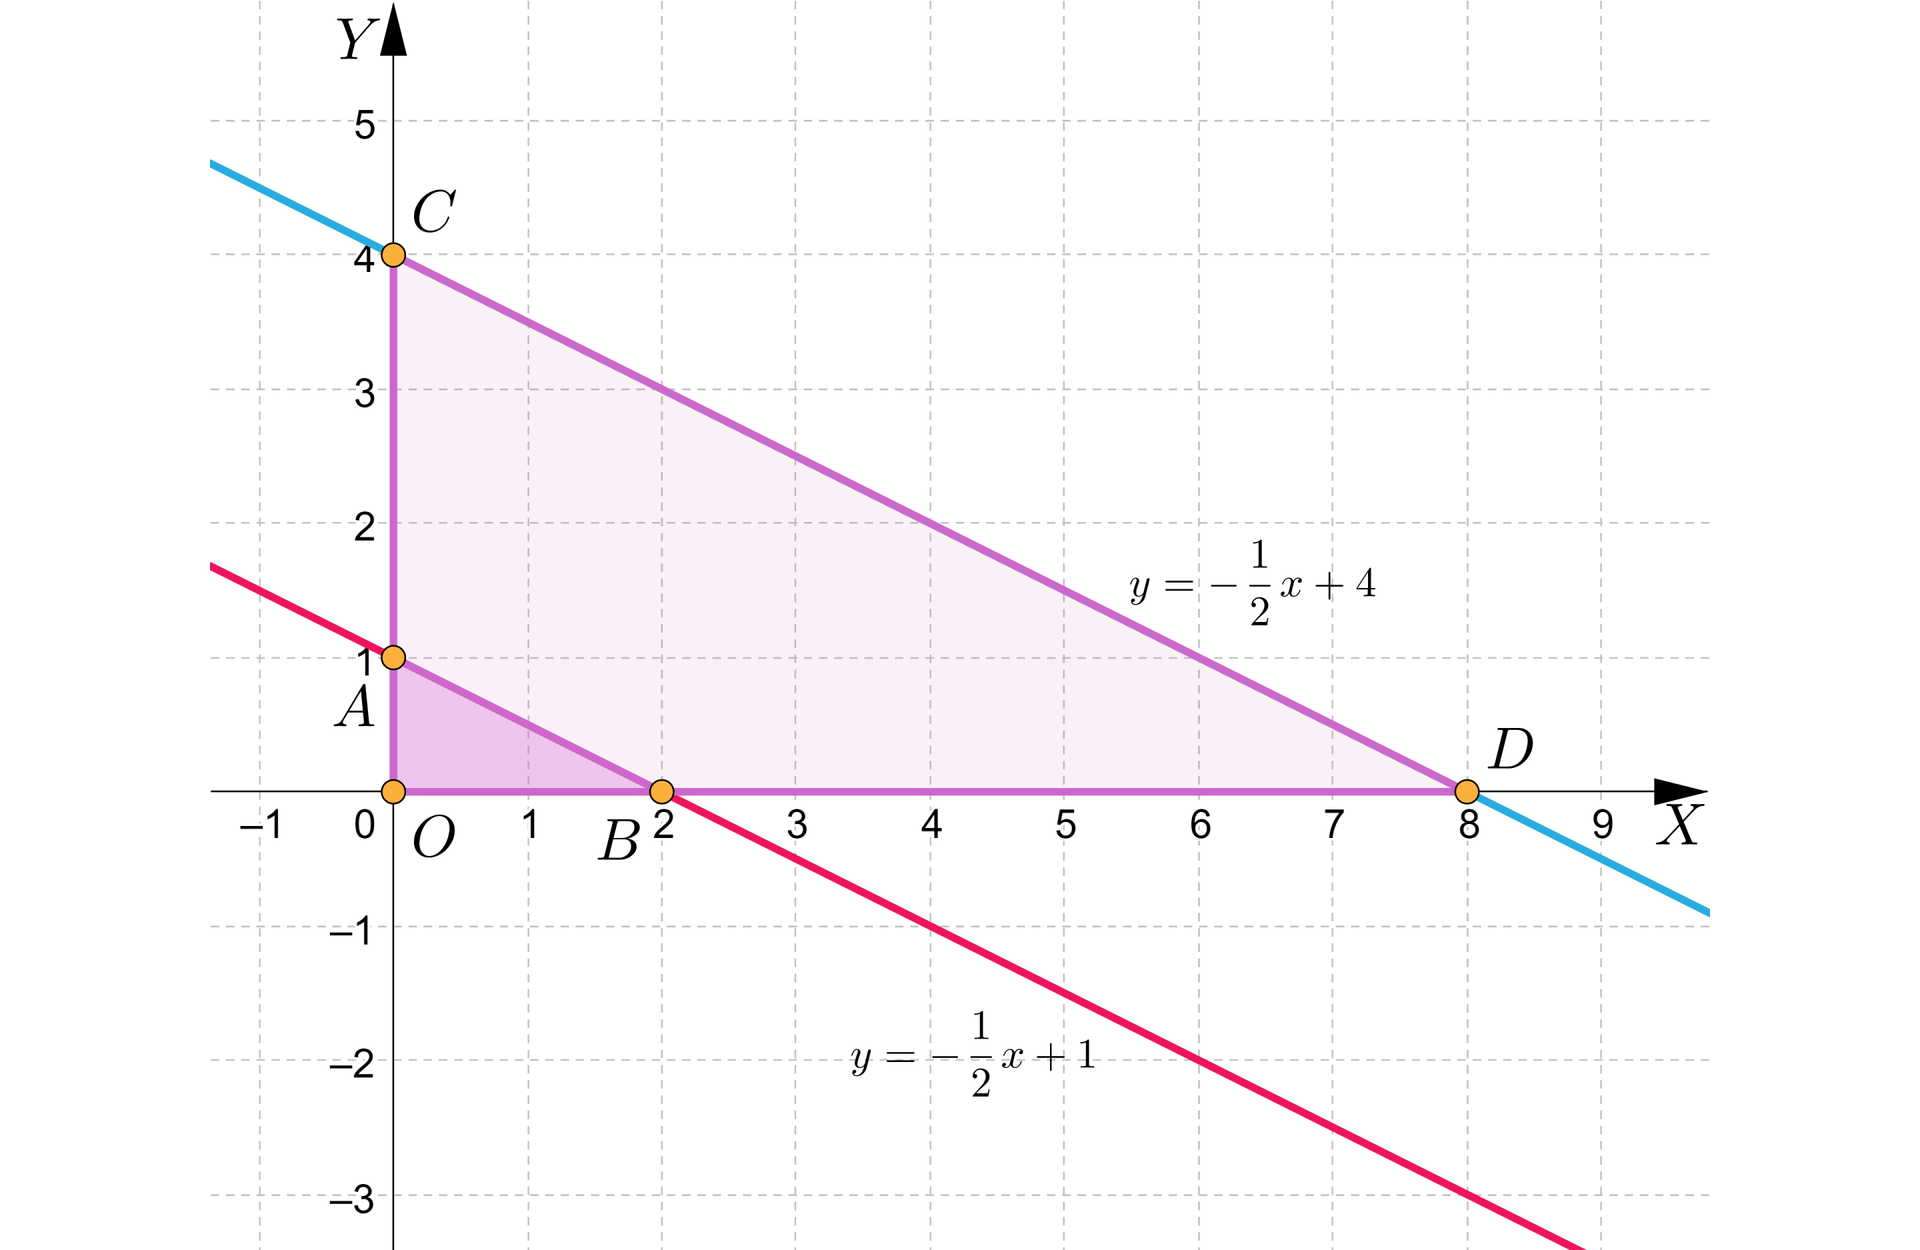 Grafika przedstawia układ współrzędnych z poziomą osią x od minus jeden do dziewięciu i pionową osią y od minus trzech do pięciu. Na płaszczyźnie znajdują się dwie proste pierwsza z nich przecina oś x w punkcie początek nawiasu, 2, 0, zamknięcie nawiasu oraz oś y w punkcie początek nawiasu, 0, 1, zamknięcie nawiasu. Prosta ta ma równanie y=−12x+1. Druga prosta przecina oś x w punkcie początek nawiasu, 8, 0, zamknięcie nawiasu oraz oś y w punkcie początek nawiasu, 0, 4, zamknięcie nawiasu. Prosta ta ma równanie y=−12x+4. Punkty przecięcia się prostych z osiami oznaczono literami A, B, C oraz D. Punkt początek nawiasu, 0, 1, zamknięcie nawiasu oznaczono literą A. Punkt początek nawiasu, 2, 0, zamknięcie nawiasu oznaczono literą B. Punkt początek nawiasu, 0, 4, zamknięcie nawiasu oznaczono literą C. Punkt początek nawiasu, 8, 0, zamknięcie nawiasu oznaczono literą D. Punkty połączono w taki sposób, że przyjęły kształt trapezu, a obszar wewnątrz zaznaczono kolorem fioletowym. Odcinek AB stanowi krótszą podstawę trapezu, a odcinek CD stanowi dłuższą podstawę trapezu. Środek układu współrzędnych oznaczono literą O. Punkty A, B oraz O połączono w taki sposób, że utworzyły trójkąt.